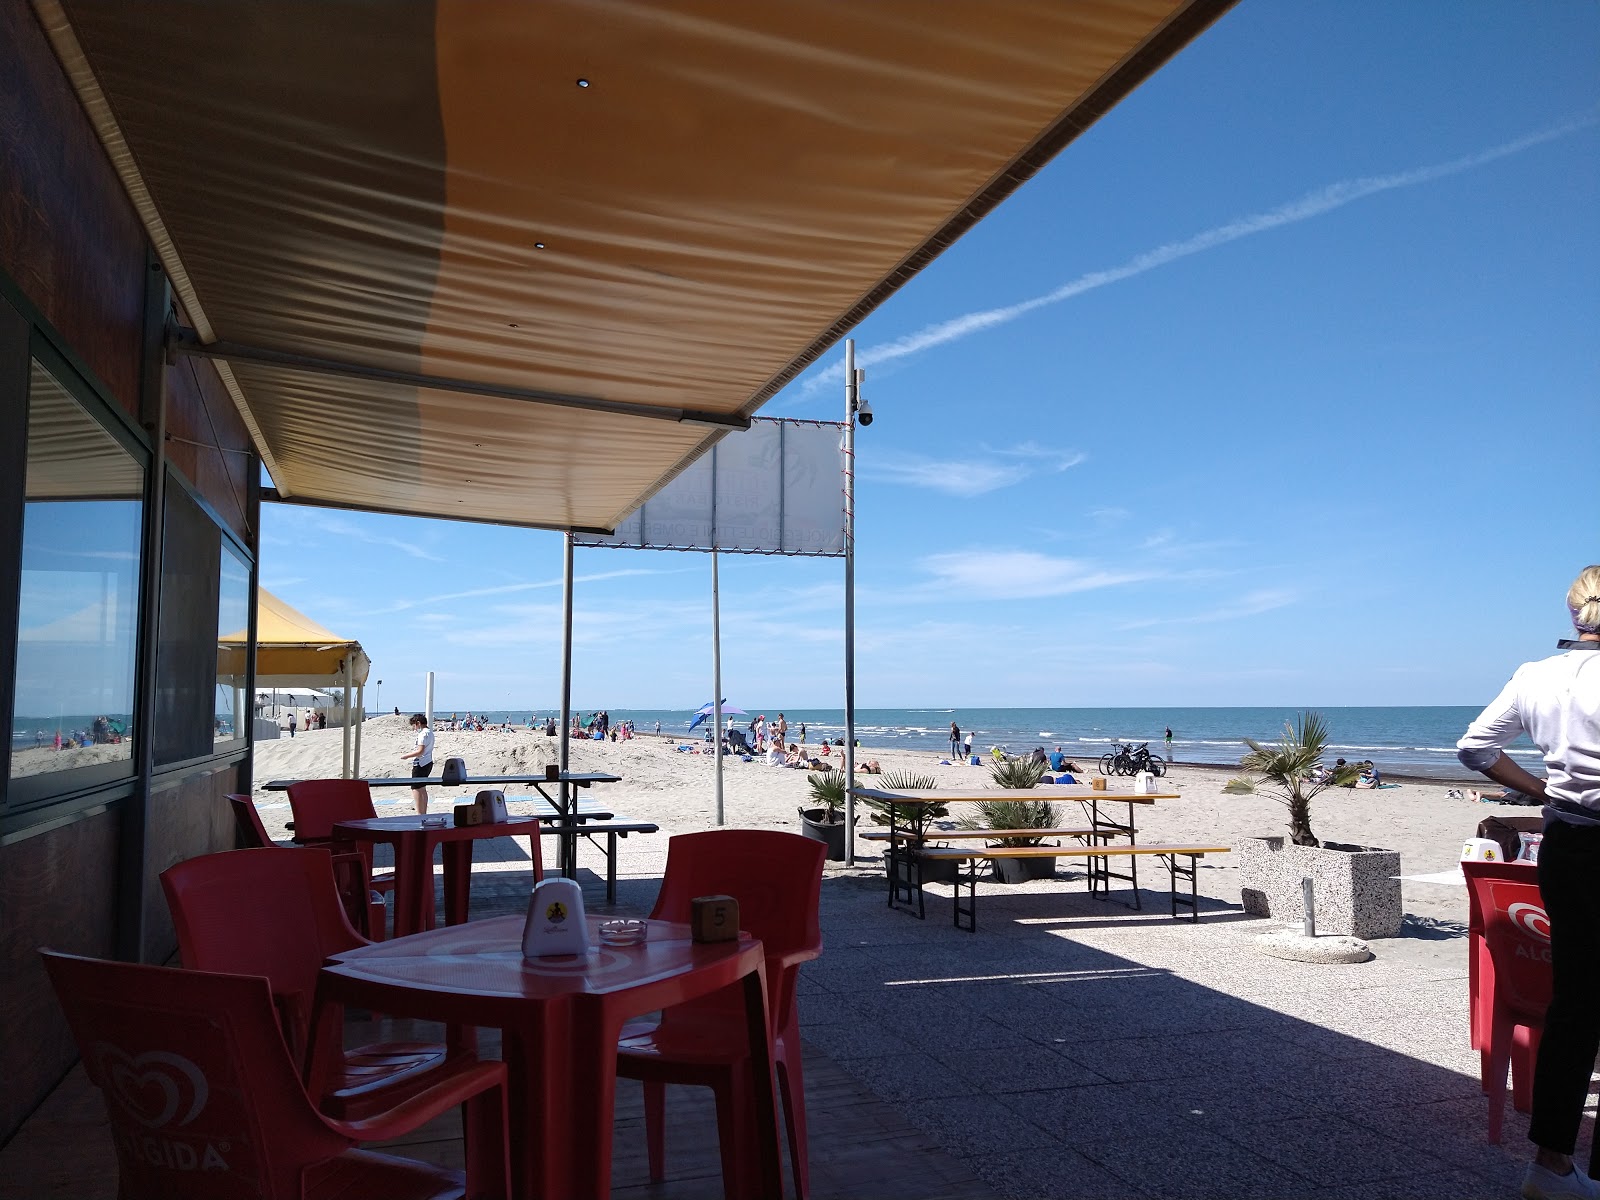 Foto di Spiaggia Boccasette - luogo popolare tra gli intenditori del relax